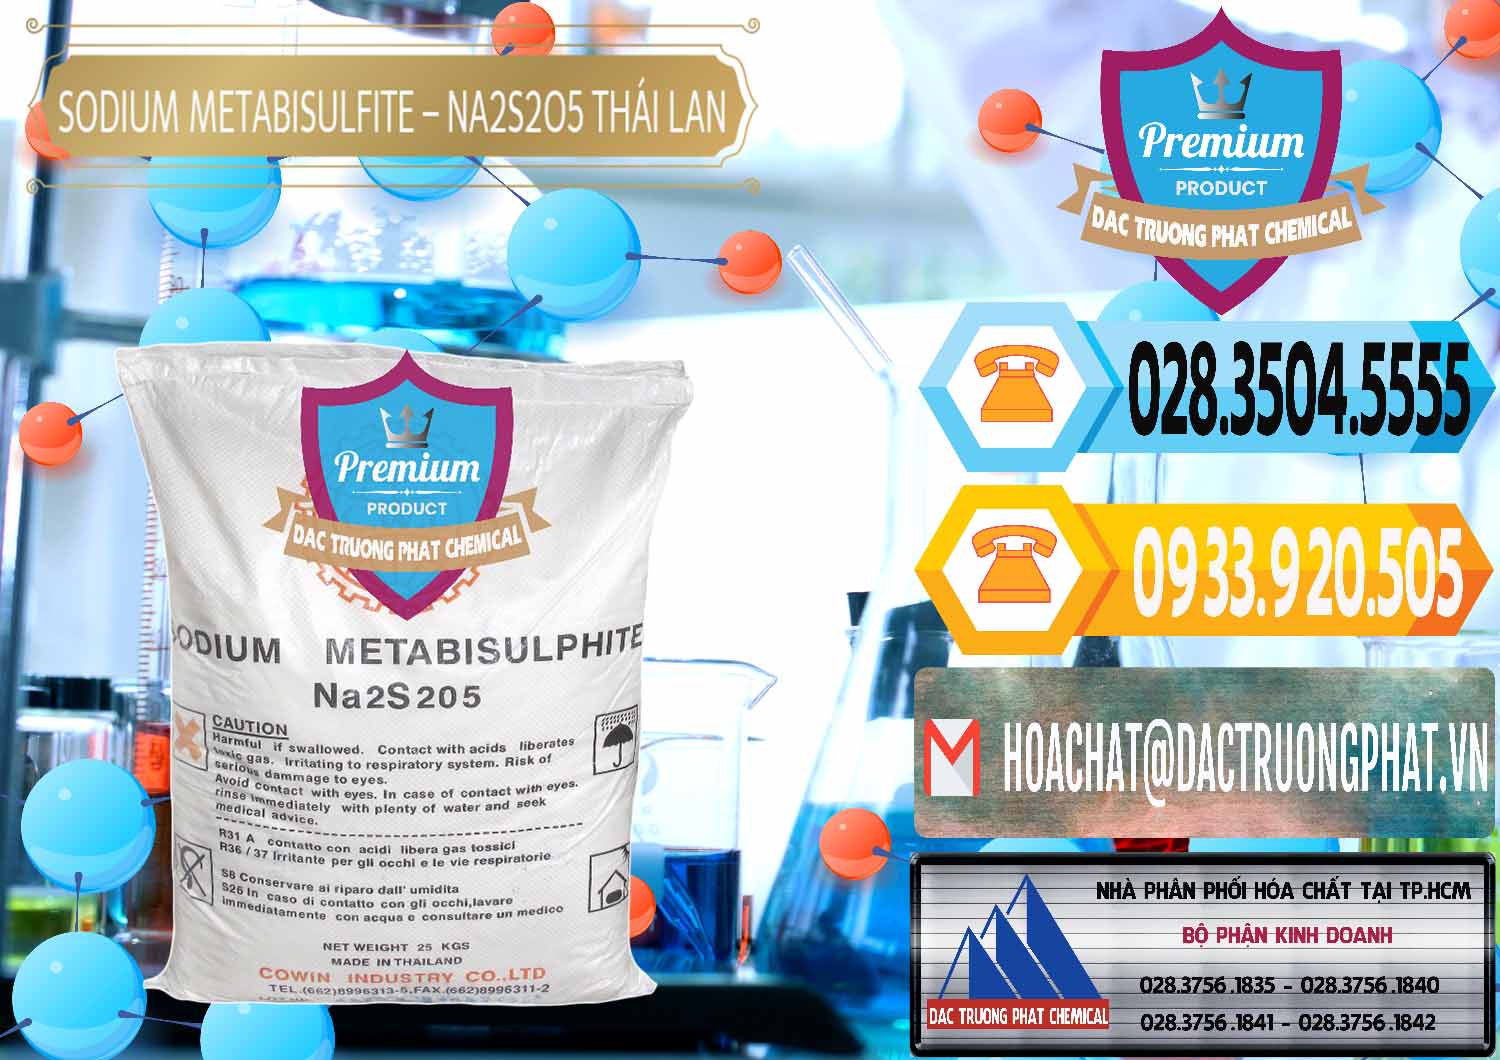 Nơi chuyên cung cấp - bán Sodium Metabisulfite - NA2S2O5 Thái Lan Cowin - 0145 - Chuyên cung cấp & nhập khẩu hóa chất tại TP.HCM - hoachattayrua.net